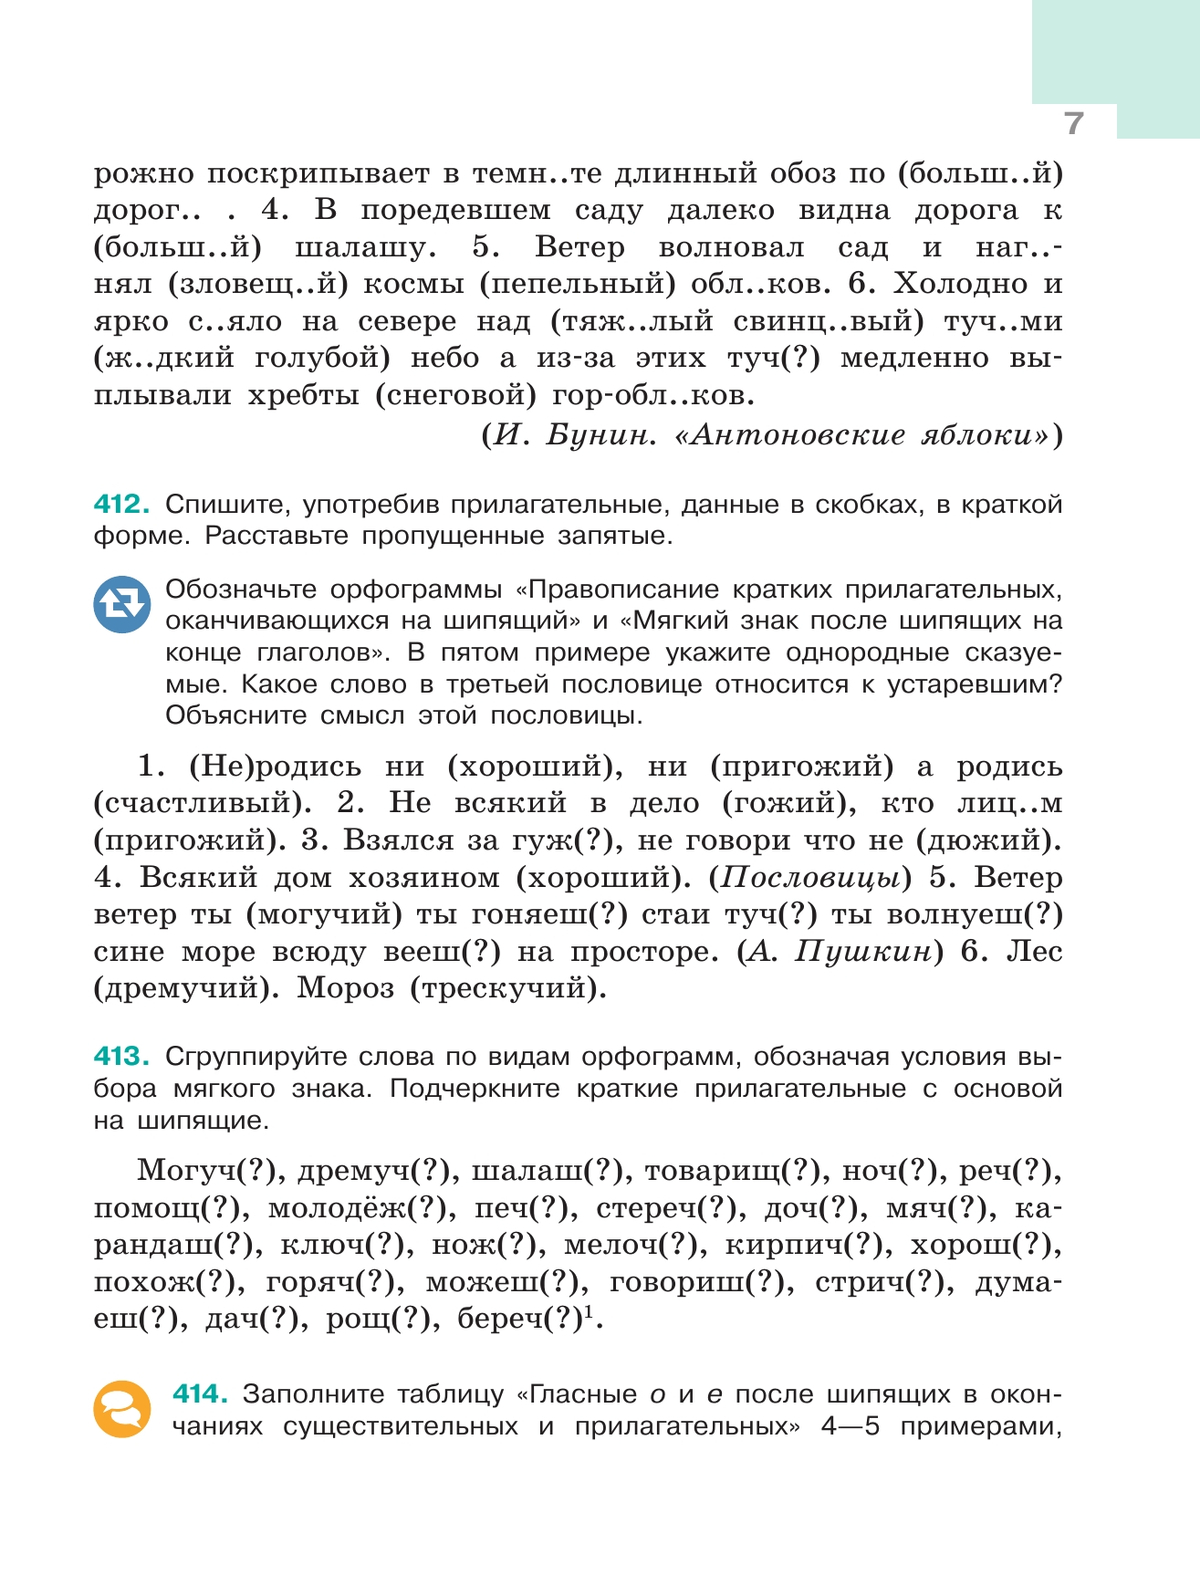 Русский язык. 6 класс. В 2 ч. Ч. 2 7